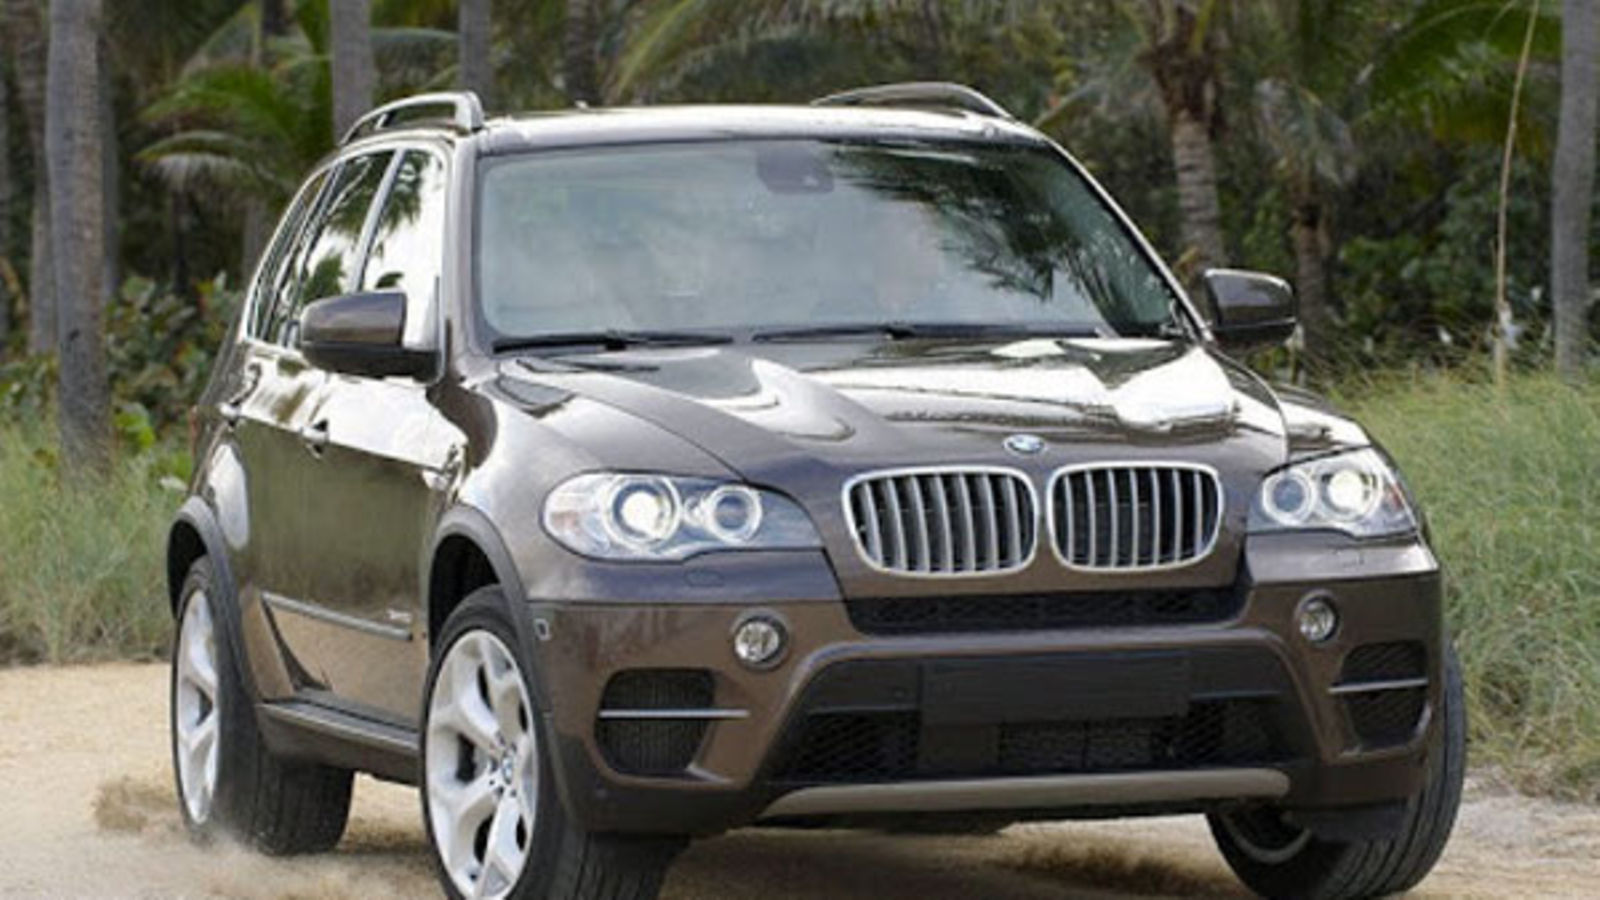 BMW E70 X5  Bmw, Bmw x5, Bmw x5 e70